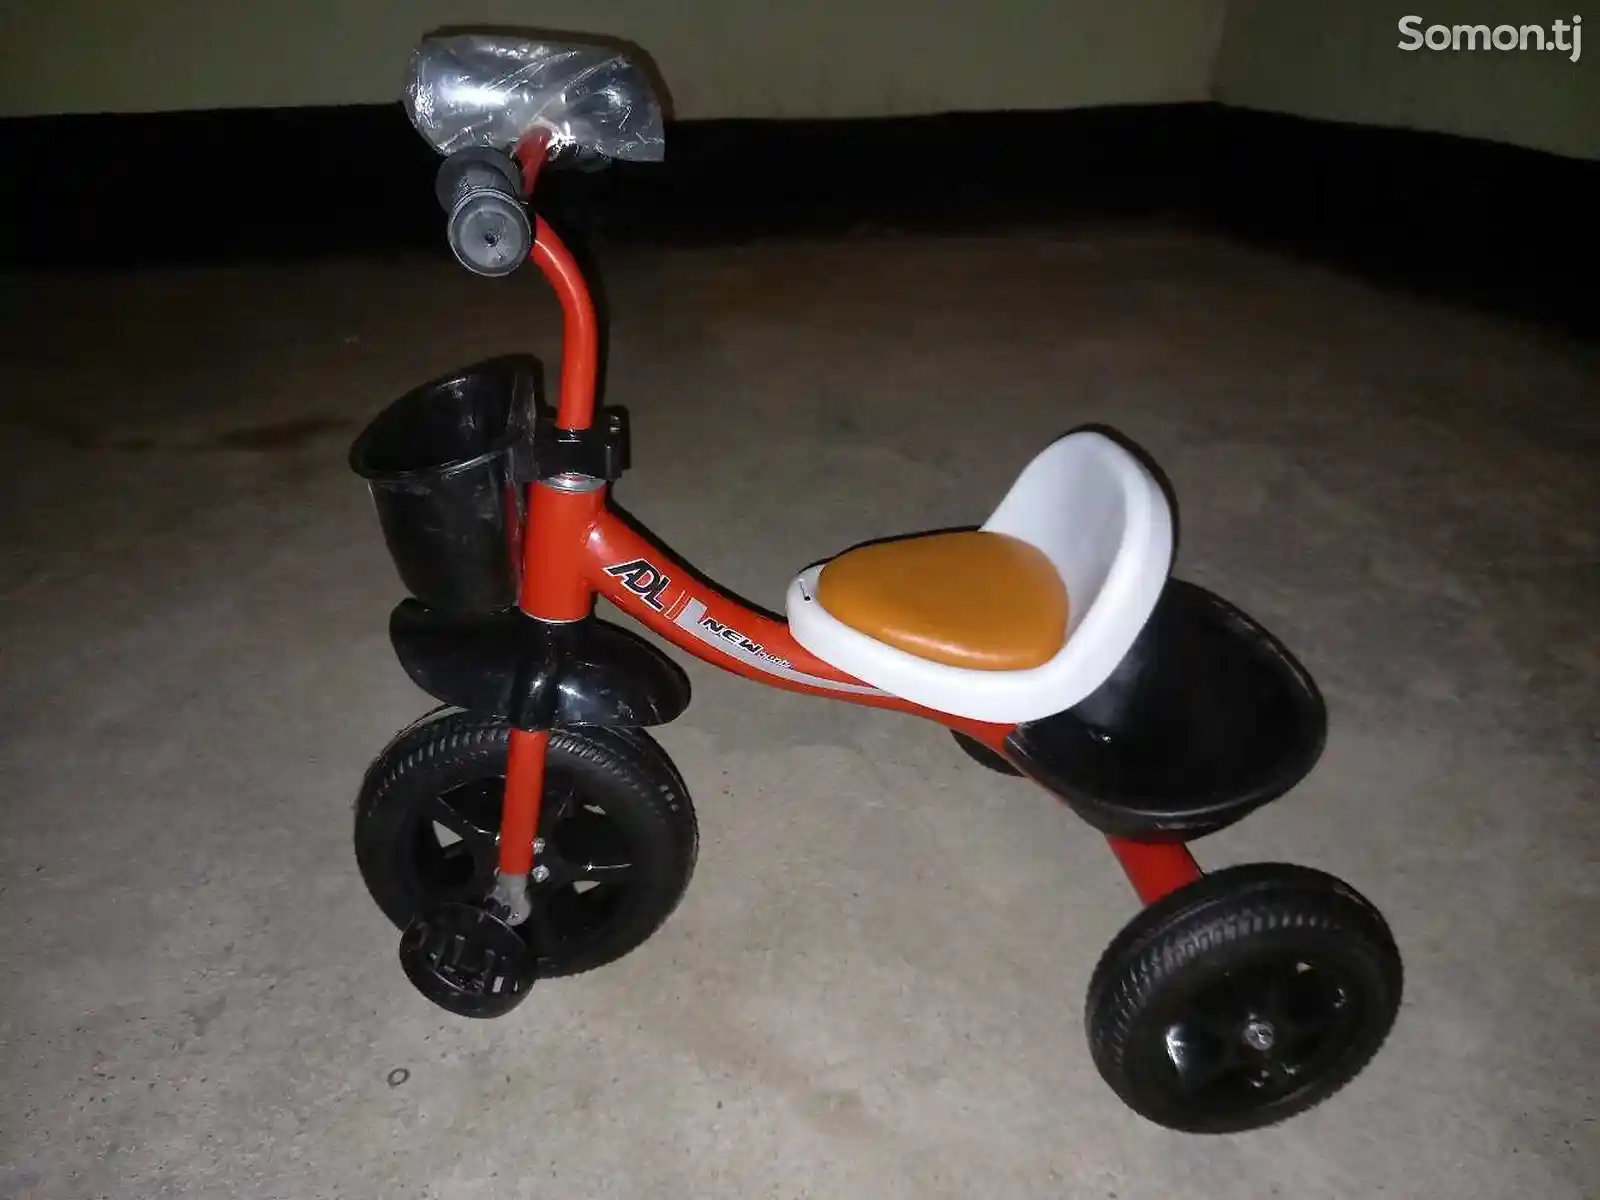 Детский трёхколёсный велосипед